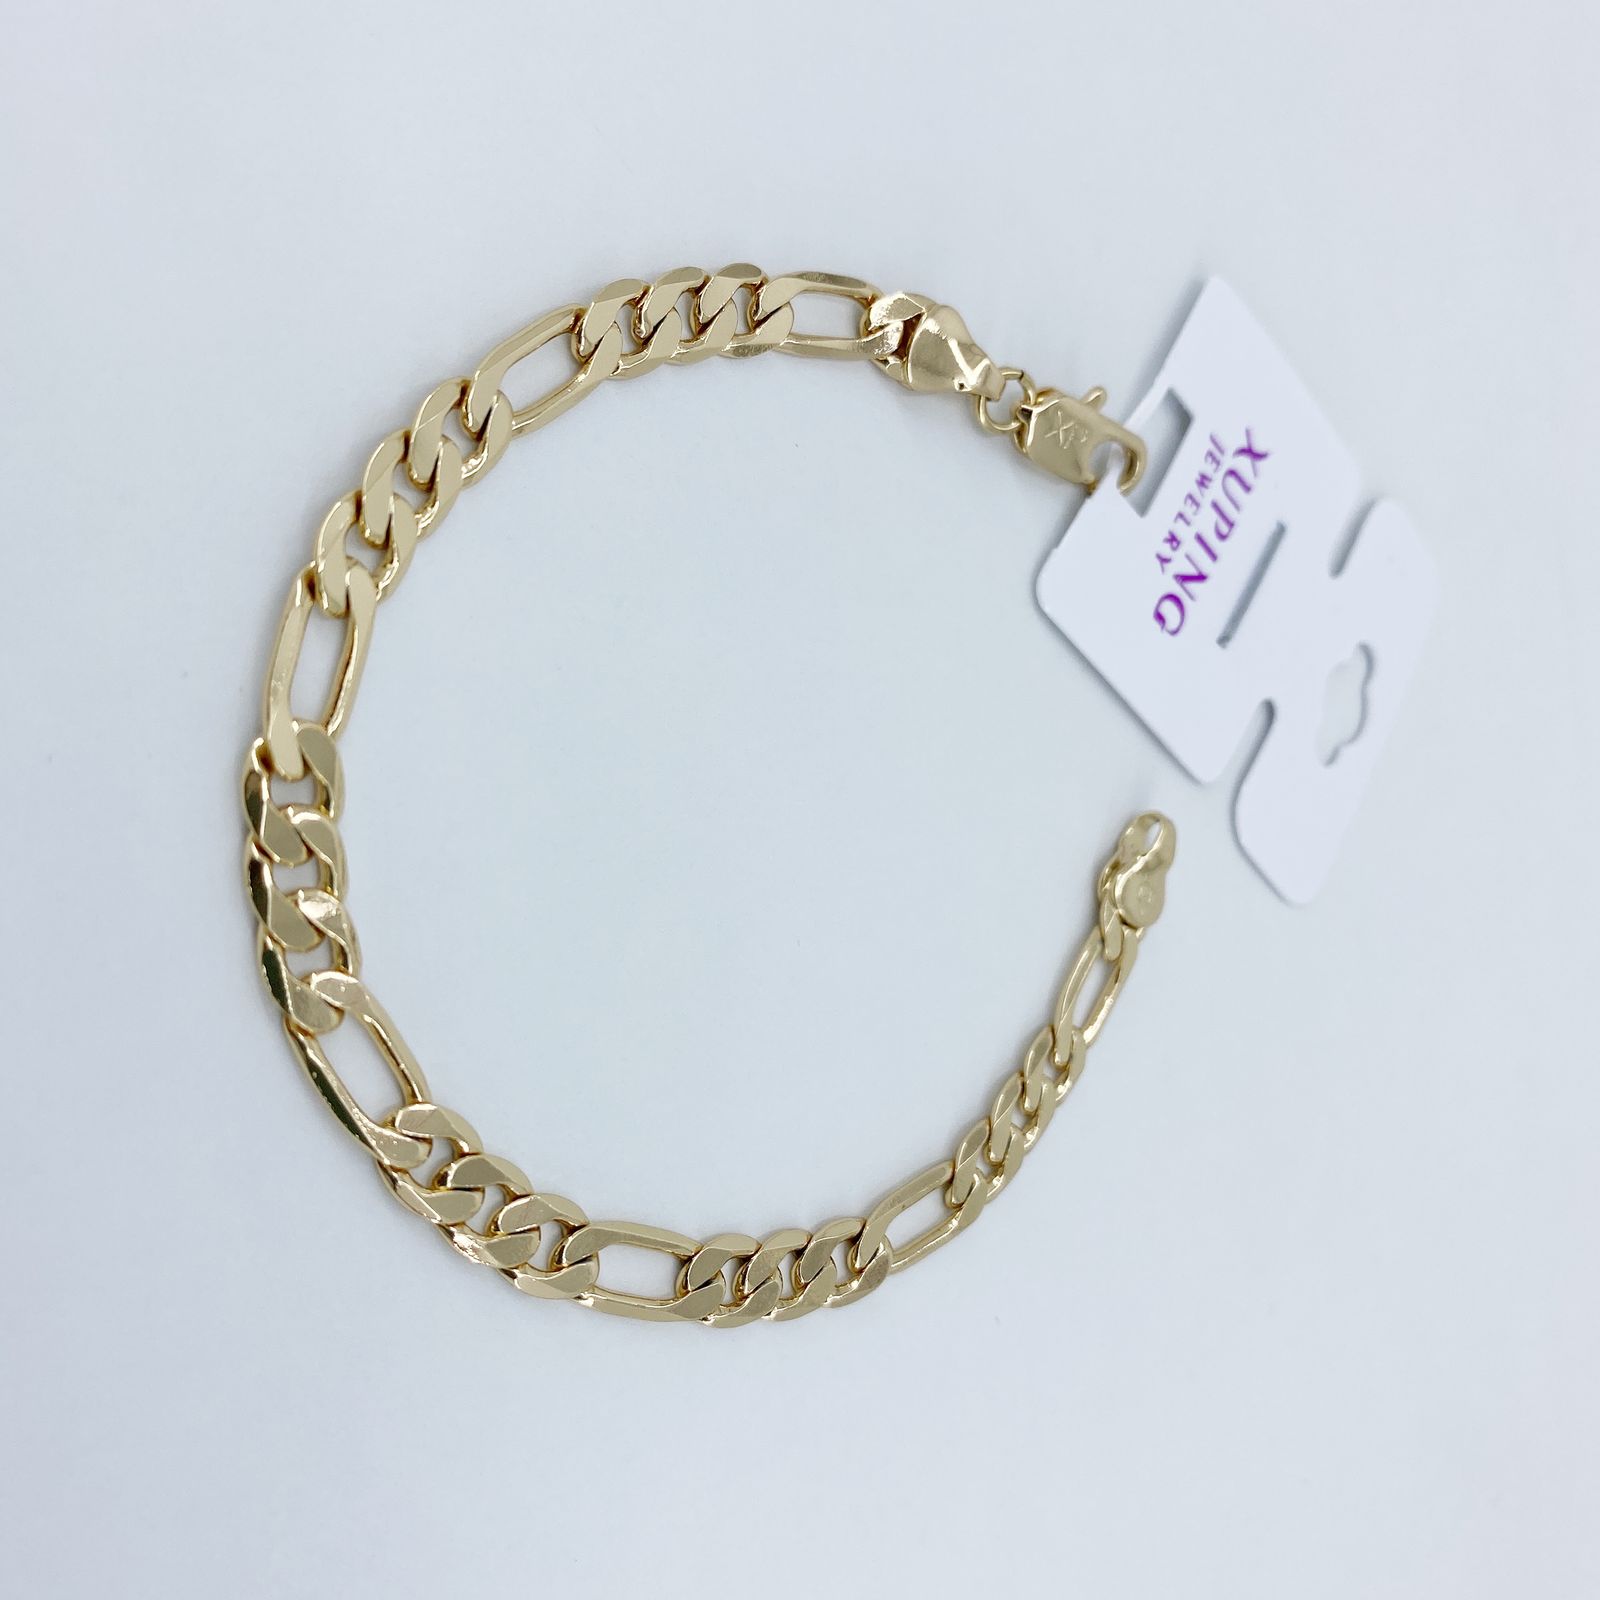 دستبند زنانه ژوپینگ کد B3029 -  - 2